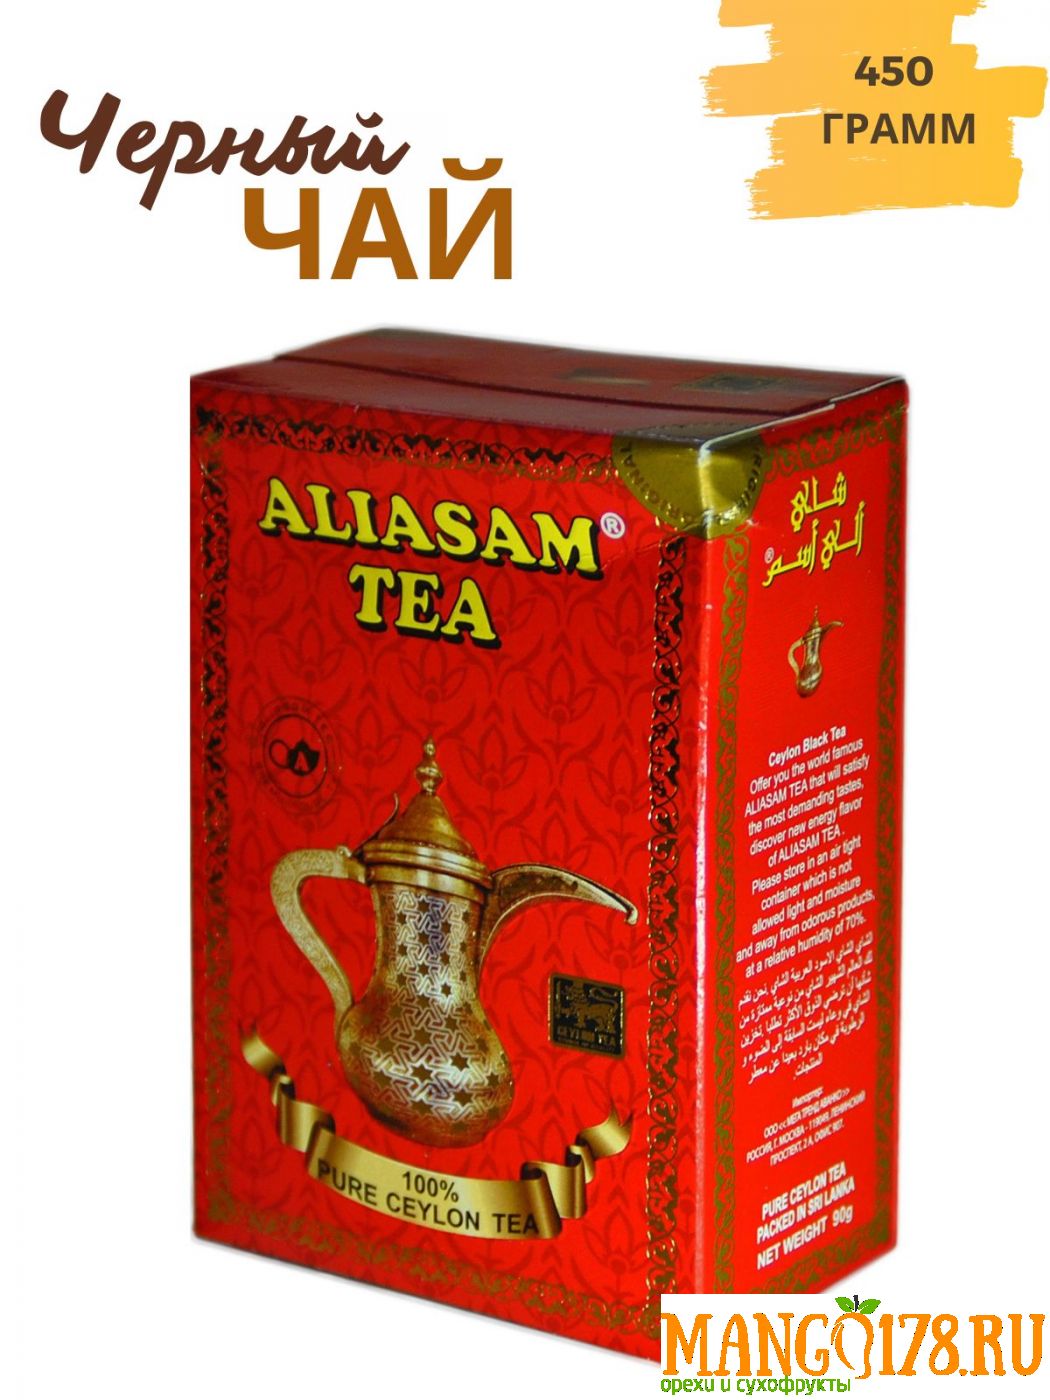 Чай черный байховый цейлонский Aliasam, 450гр